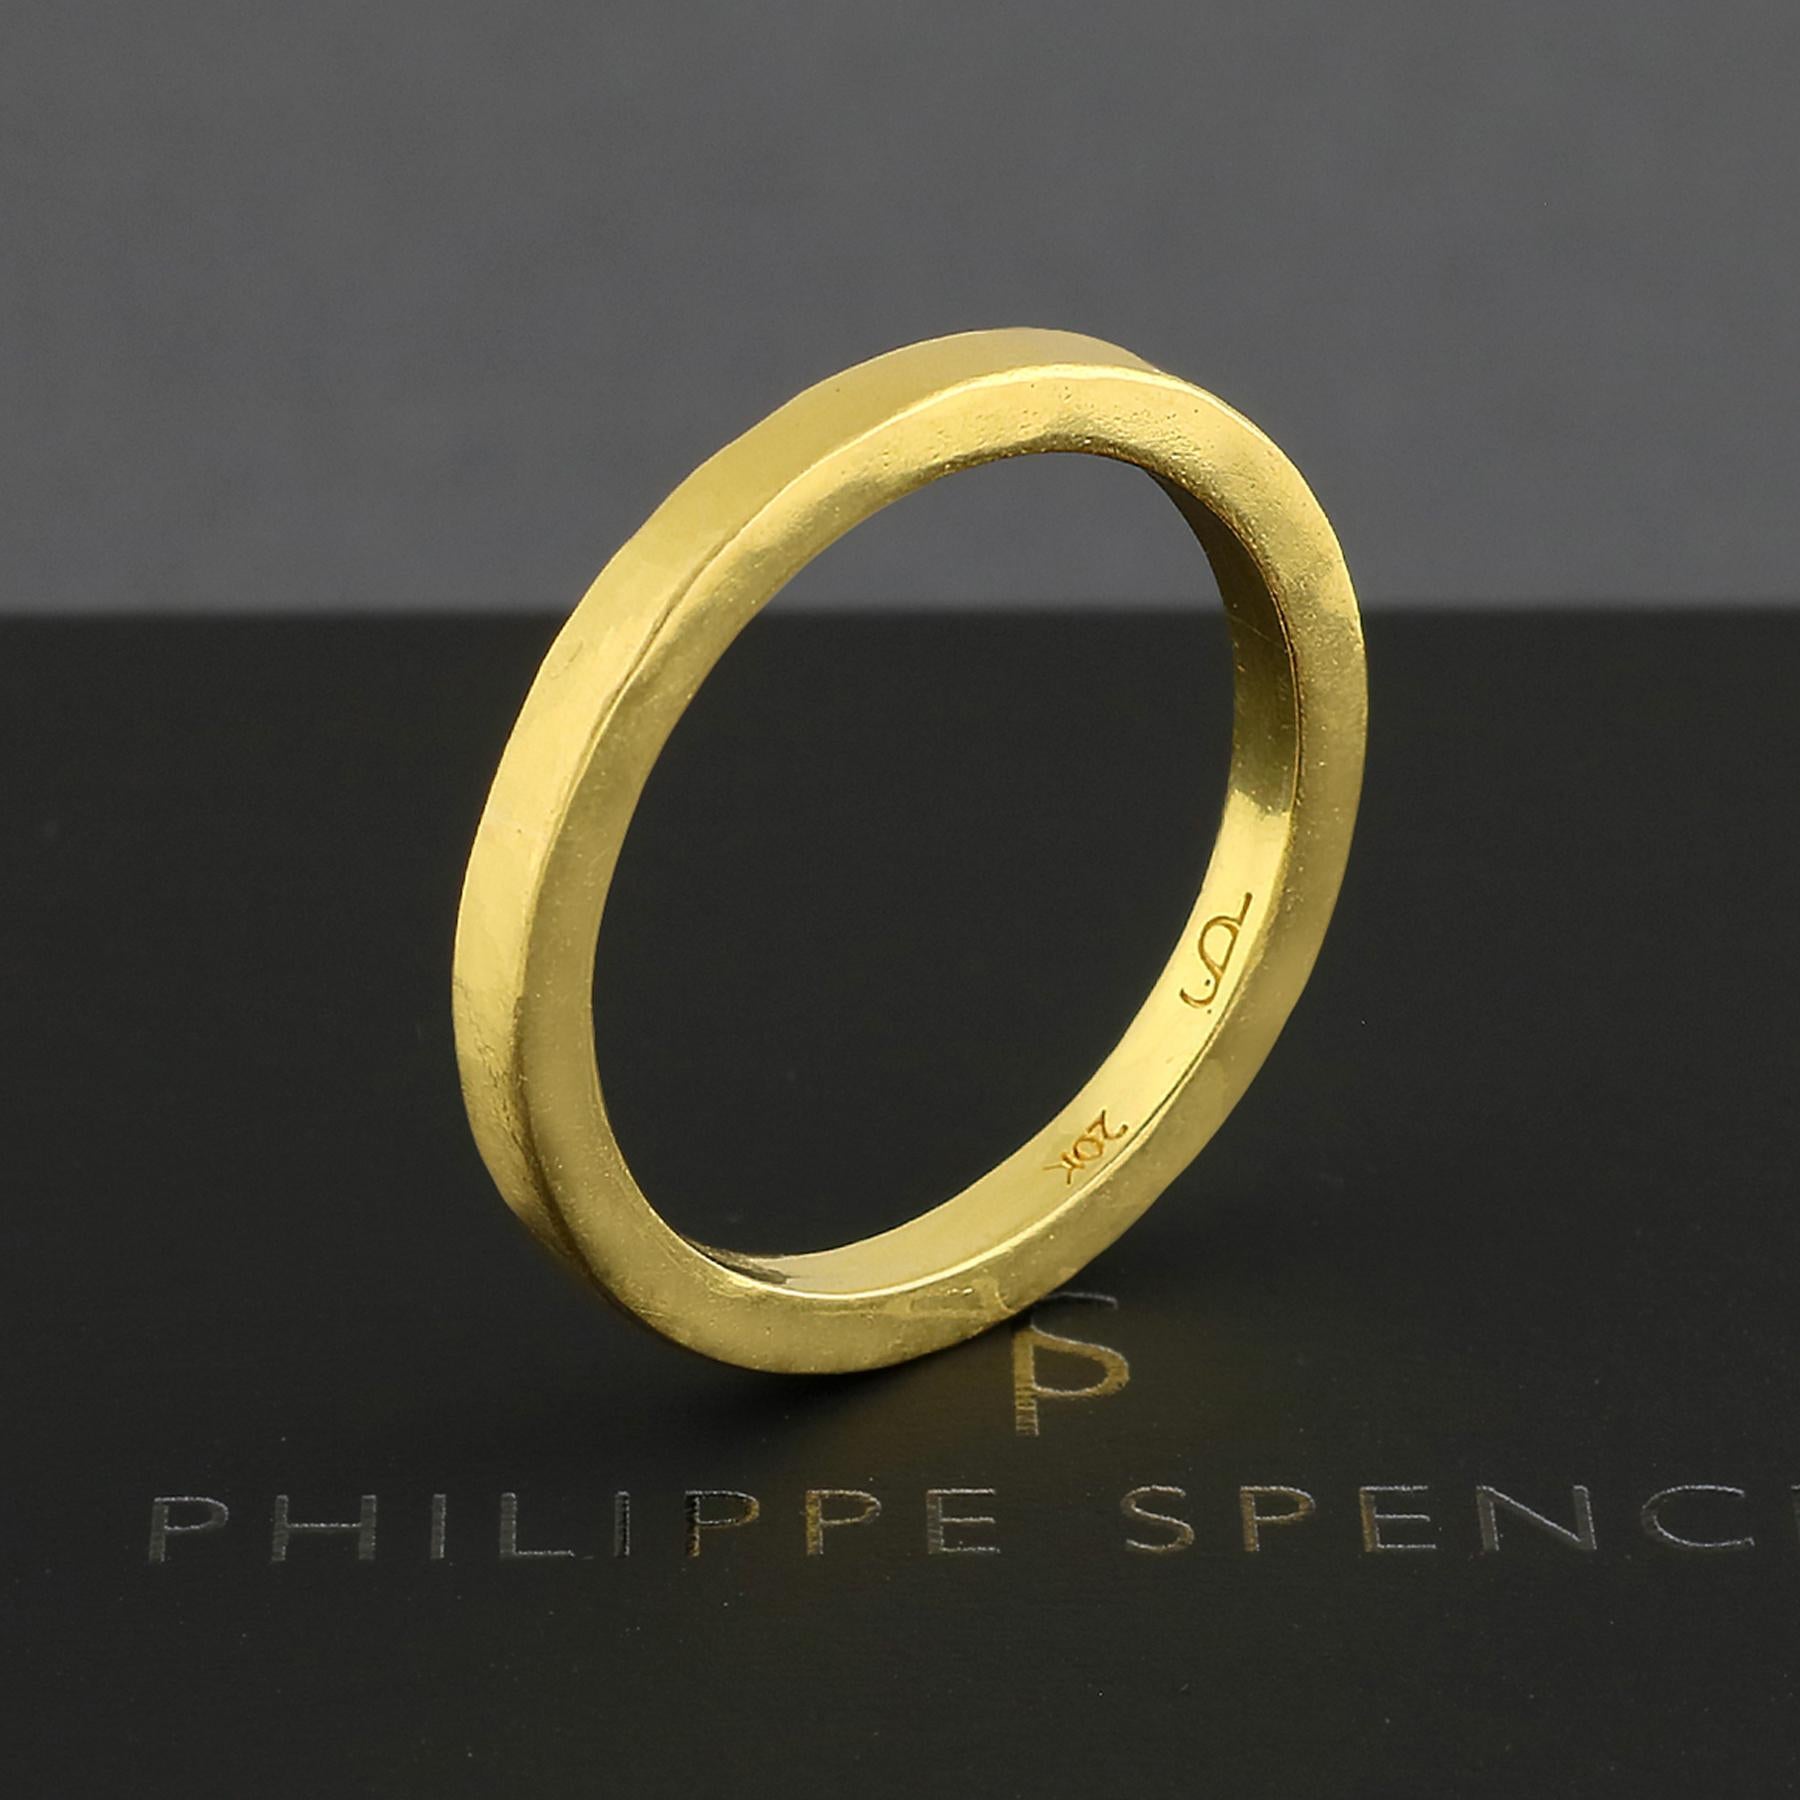 PHILIPPE-SPENCER - Bracelet en or massif 20K de 2,5 X 2,25 mm forgé à la main avec finition martelée. Extérieur fortement mat, intérieur poli miroir.  Chacune est une œuvre d'art unique. Cette bague PHILIPPE SPENCER en or massif 20K faite à la main